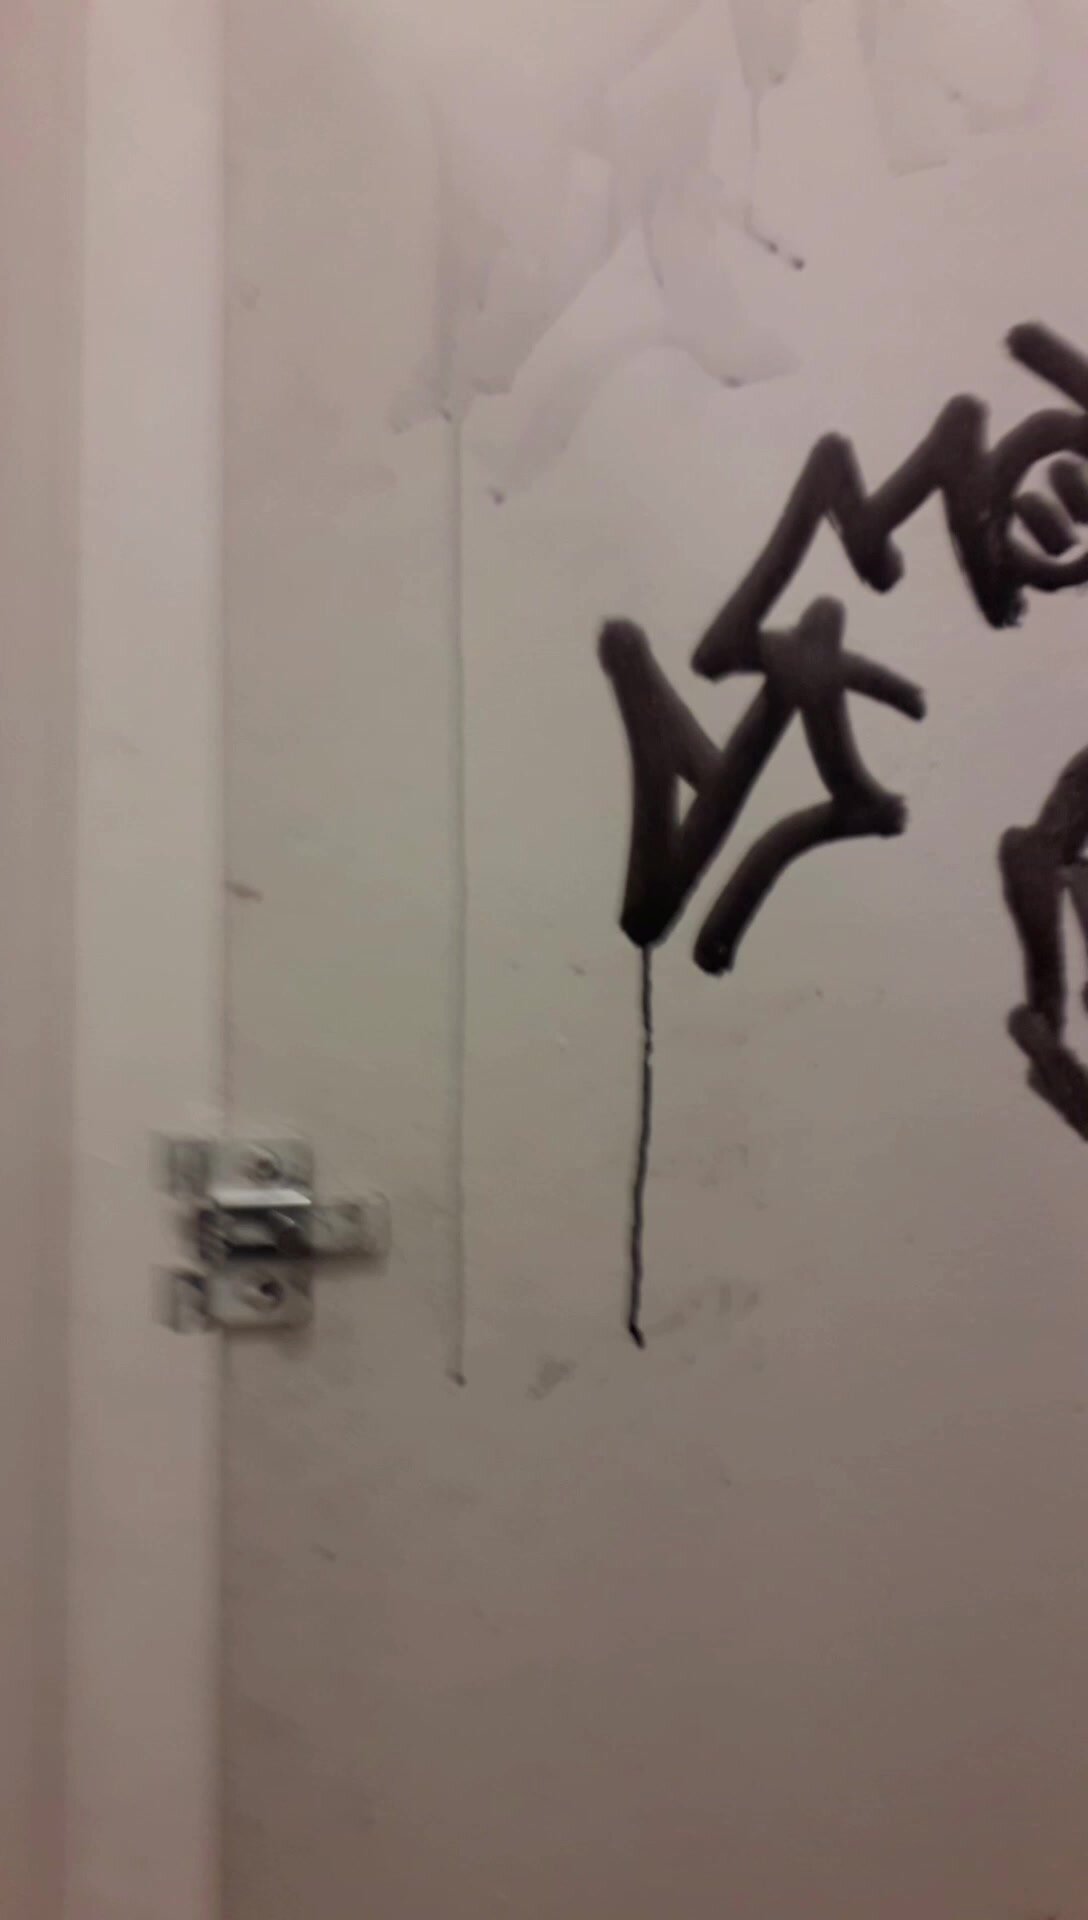 Strangers Opened The Public Toilet Door - video 28